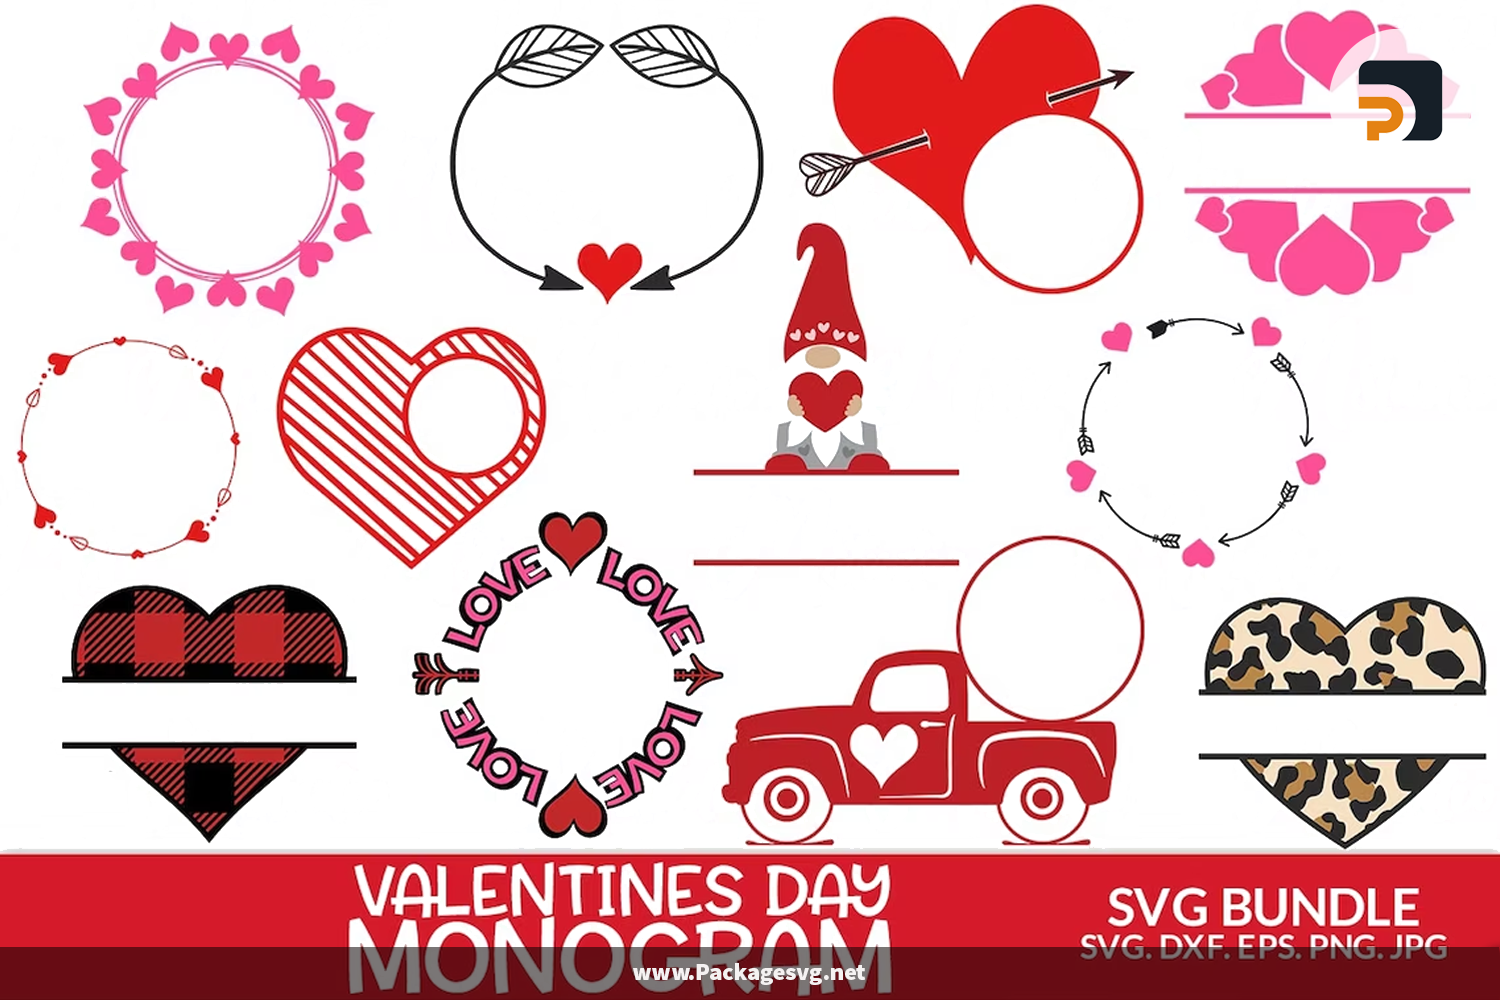 Heart Designs SVG PNG DXF EPS JPG Digital Download|